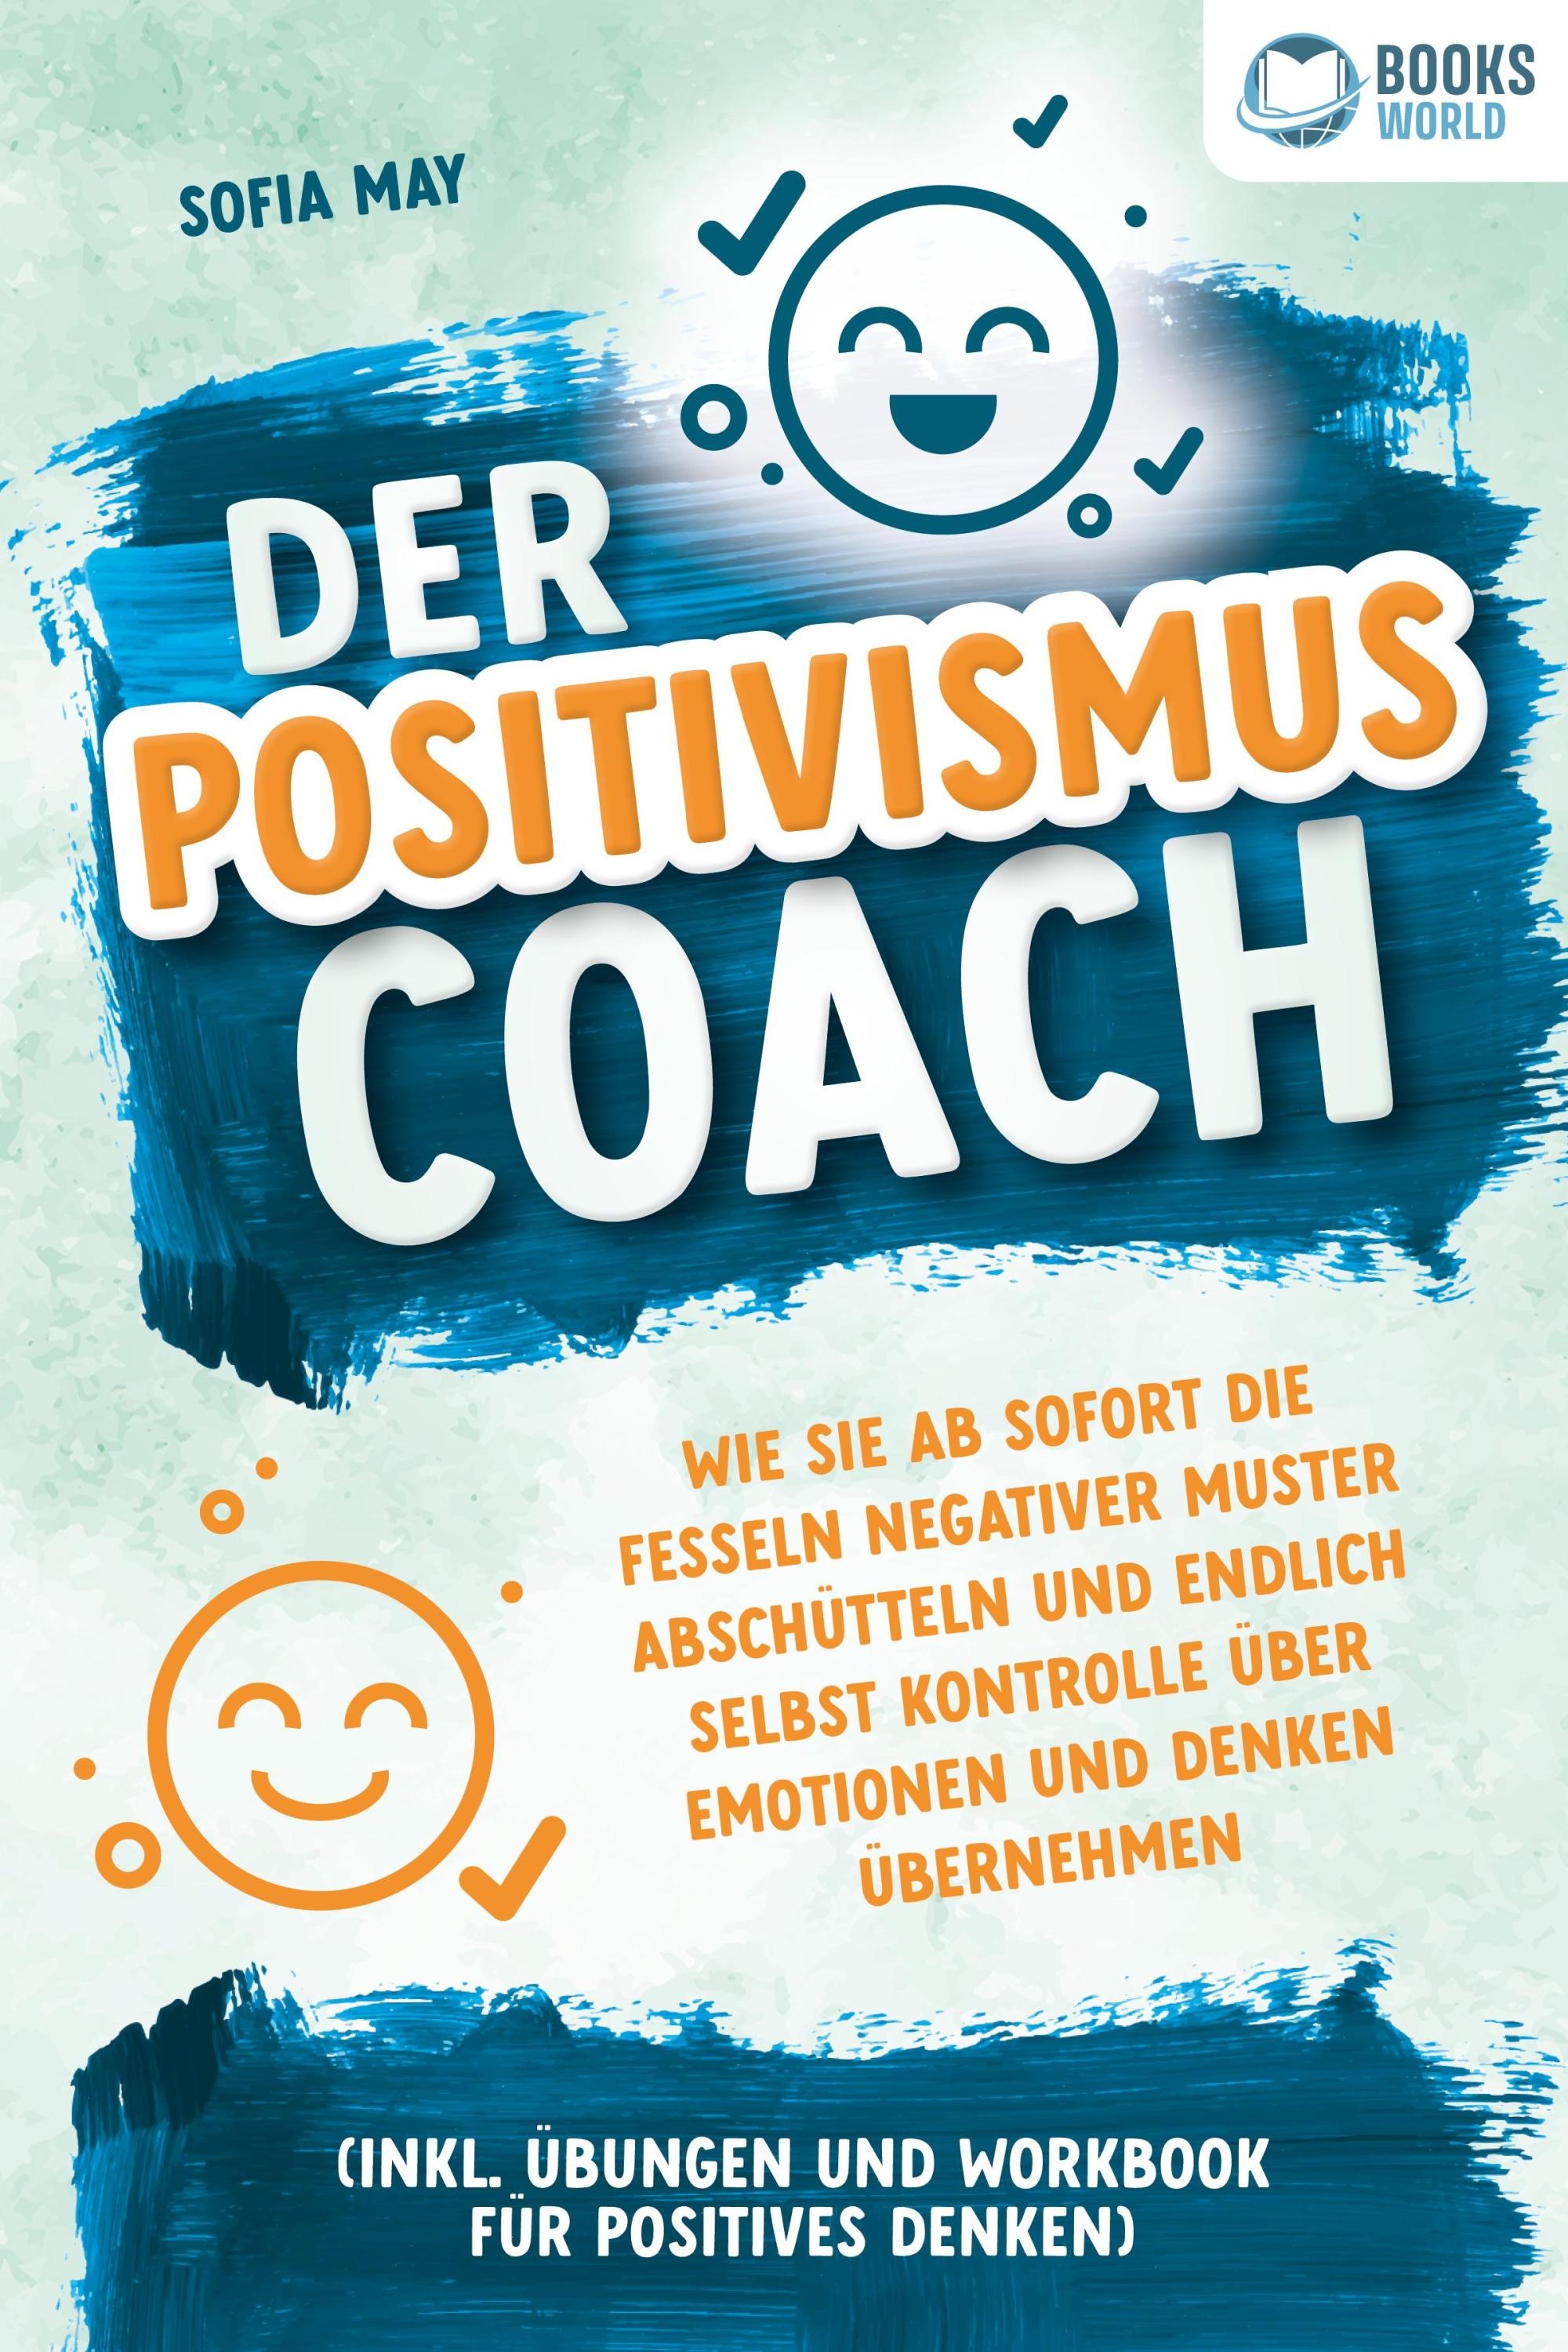 Der Positivismus Coach: Wie Sie Ab Sofort Die Fesseln Negativer Muster Abschütteln Und Endlich Selbst Kontrolle Über Emotionen Und Denken Übernehmen (